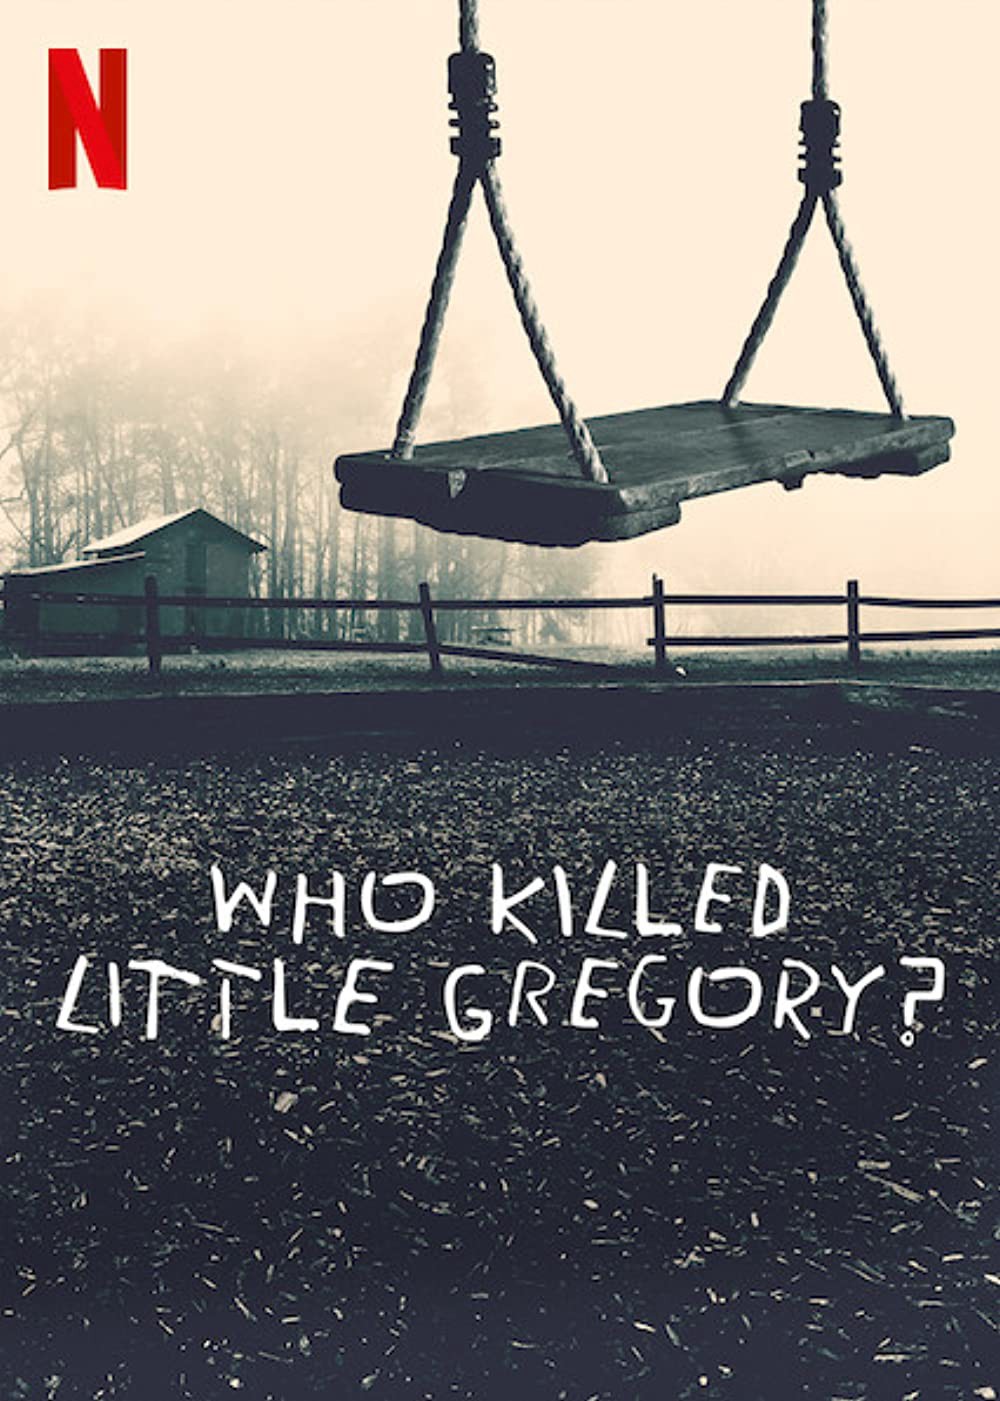 Ai đã sát hại bé Gregory? - Ai đã sát hại bé Gregory?